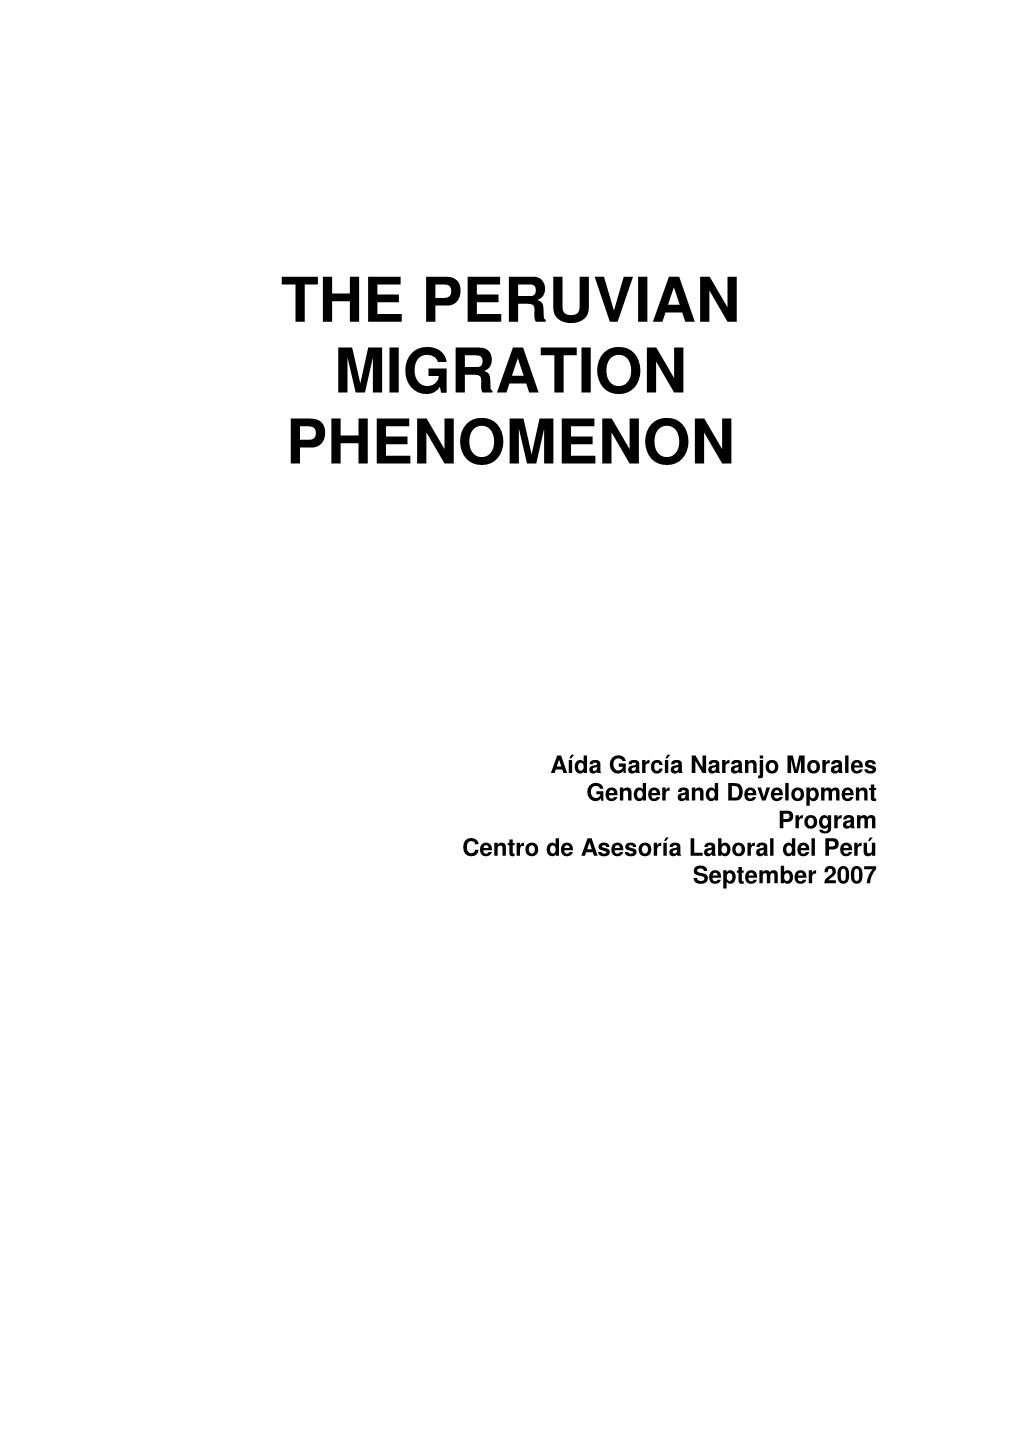 The Peruvian Migration Phenomenon